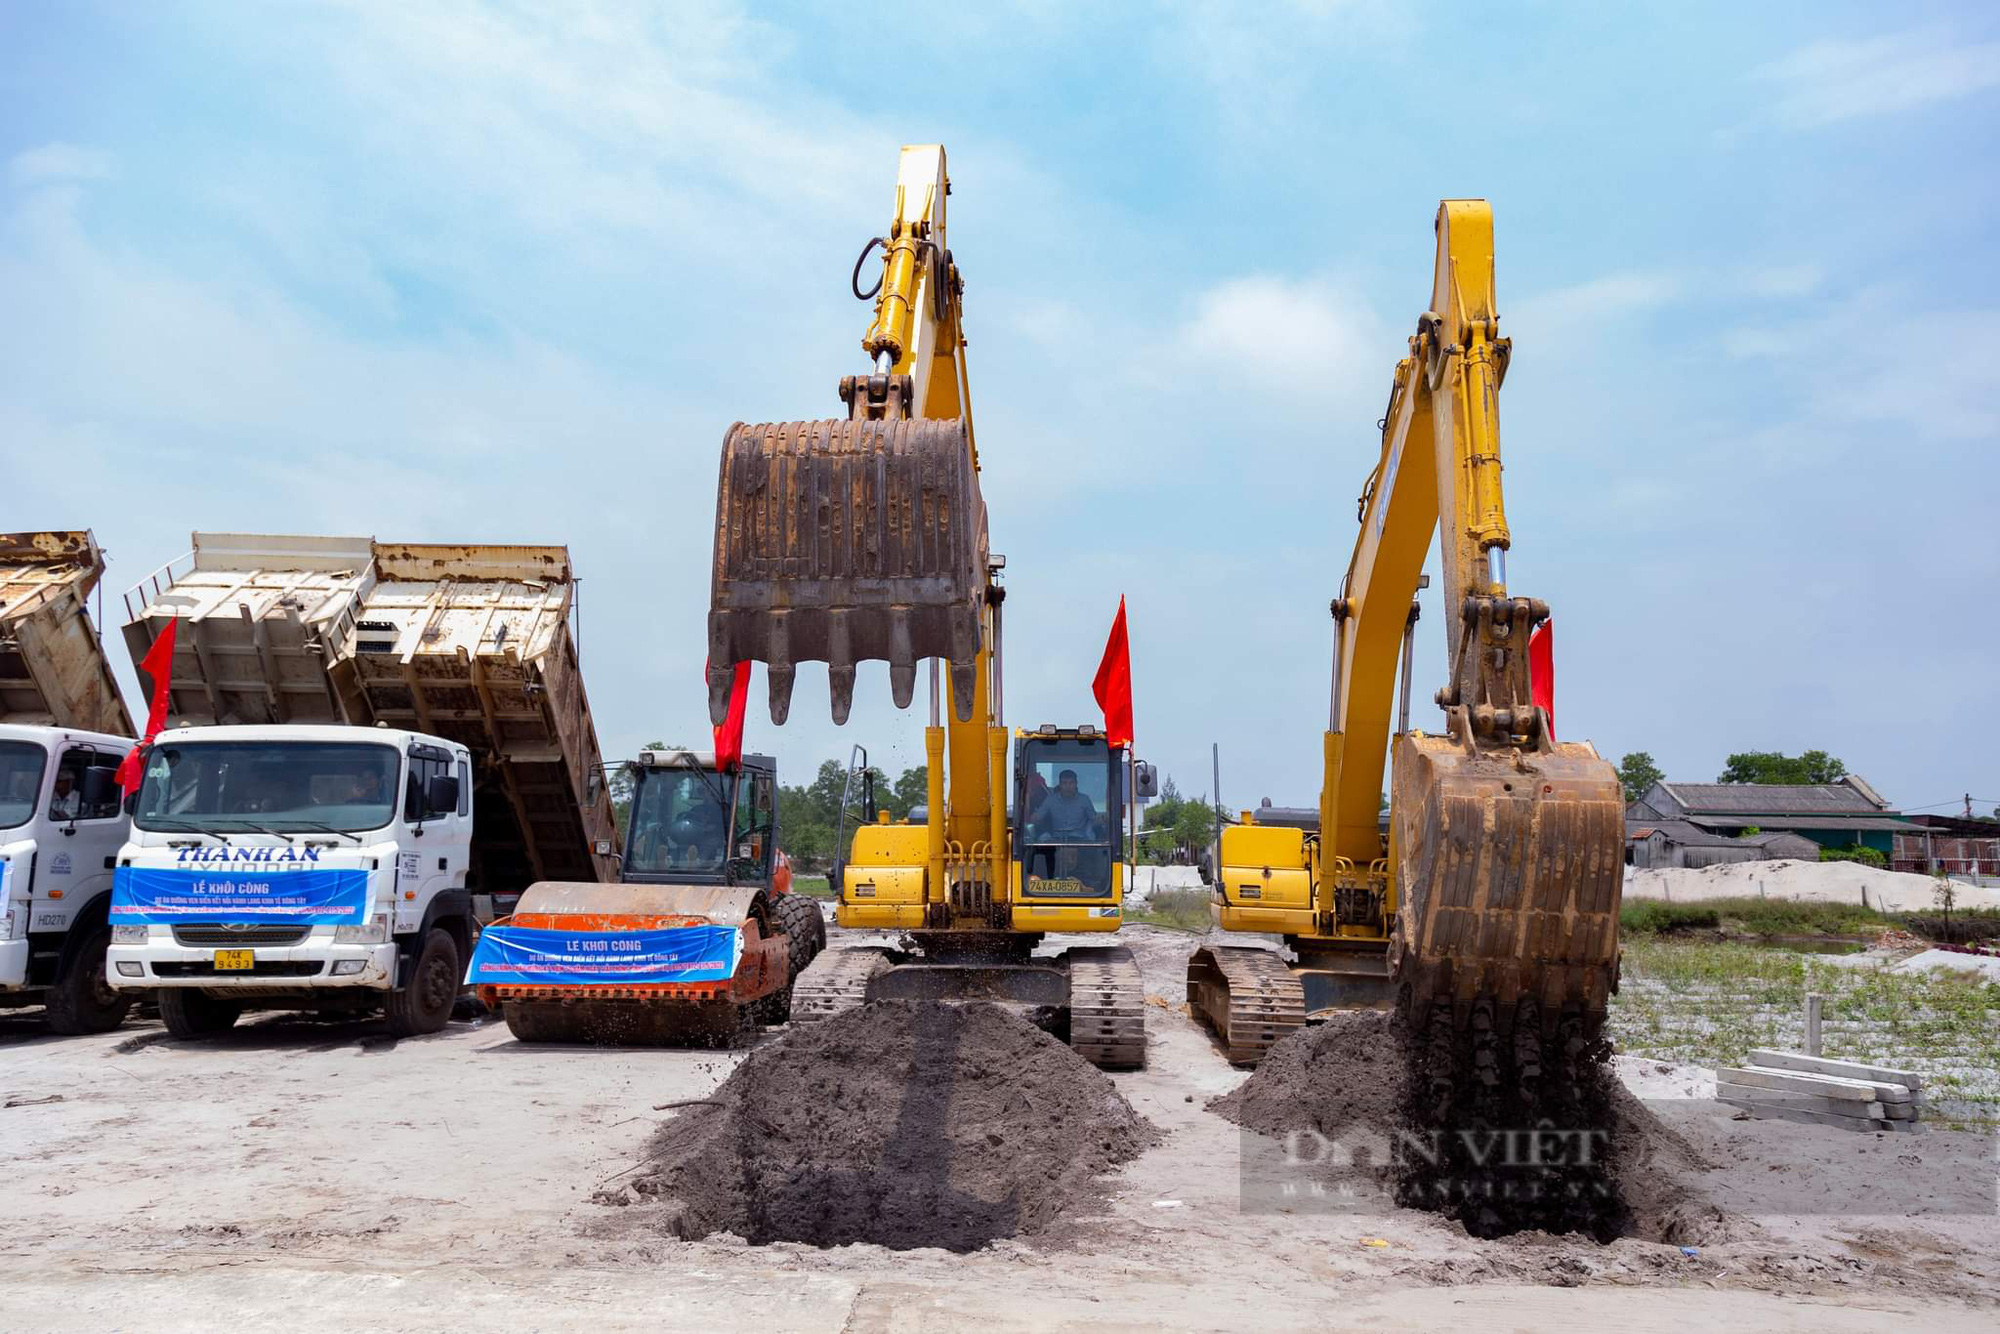 Chủ tịch nước nhấn nút khởi công dự án đường ven biển hơn 2.000 tỷ đồng ở Quảng Trị - Ảnh 2.